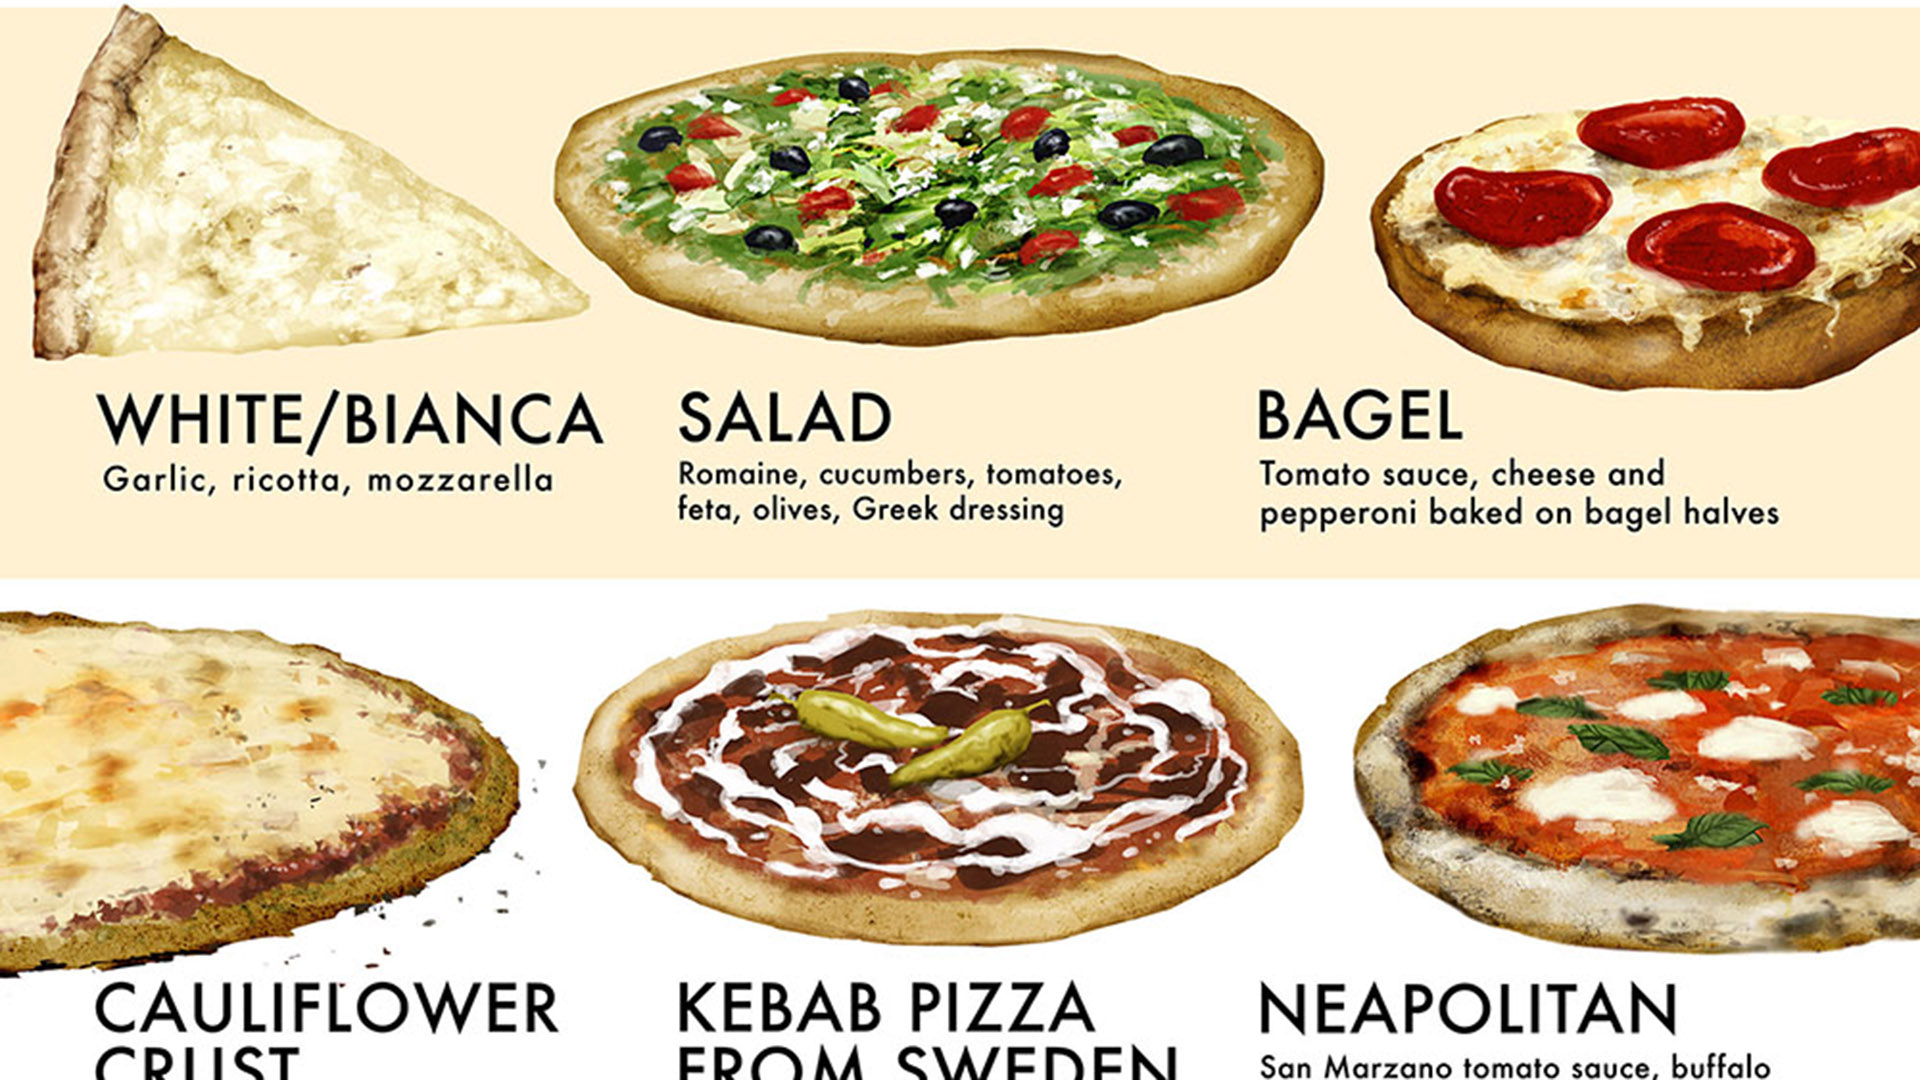 рецепт готовки пиццы на английском языке фото 81